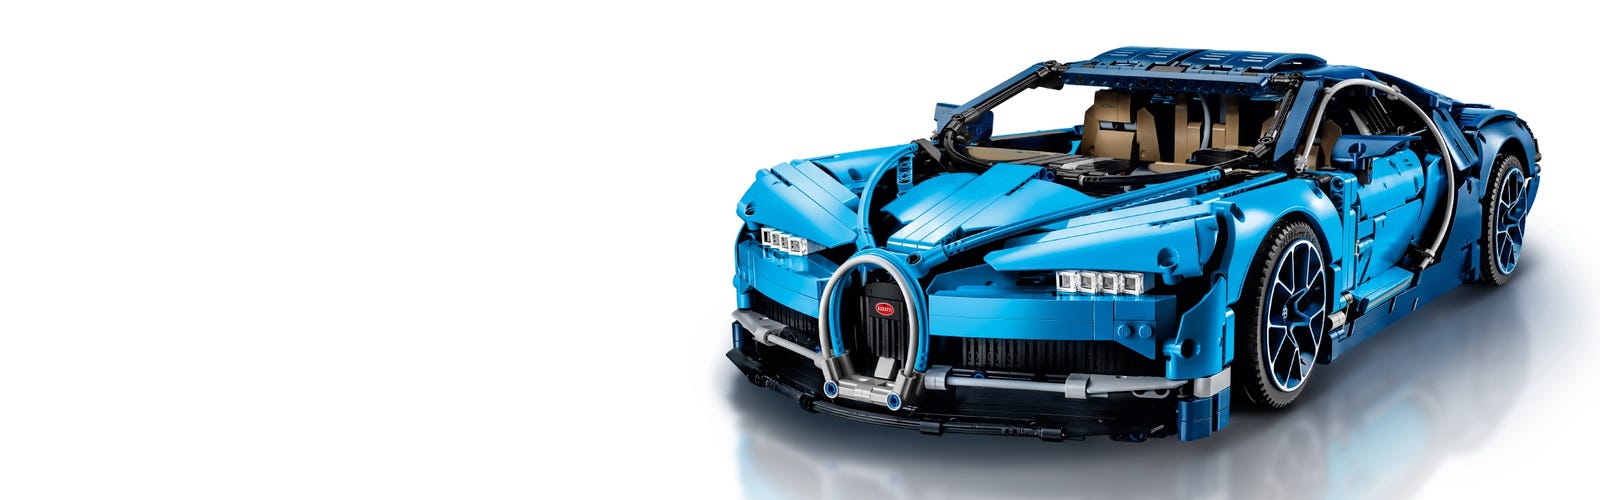 LEGO 42083 Technic - Bugatti Chiron